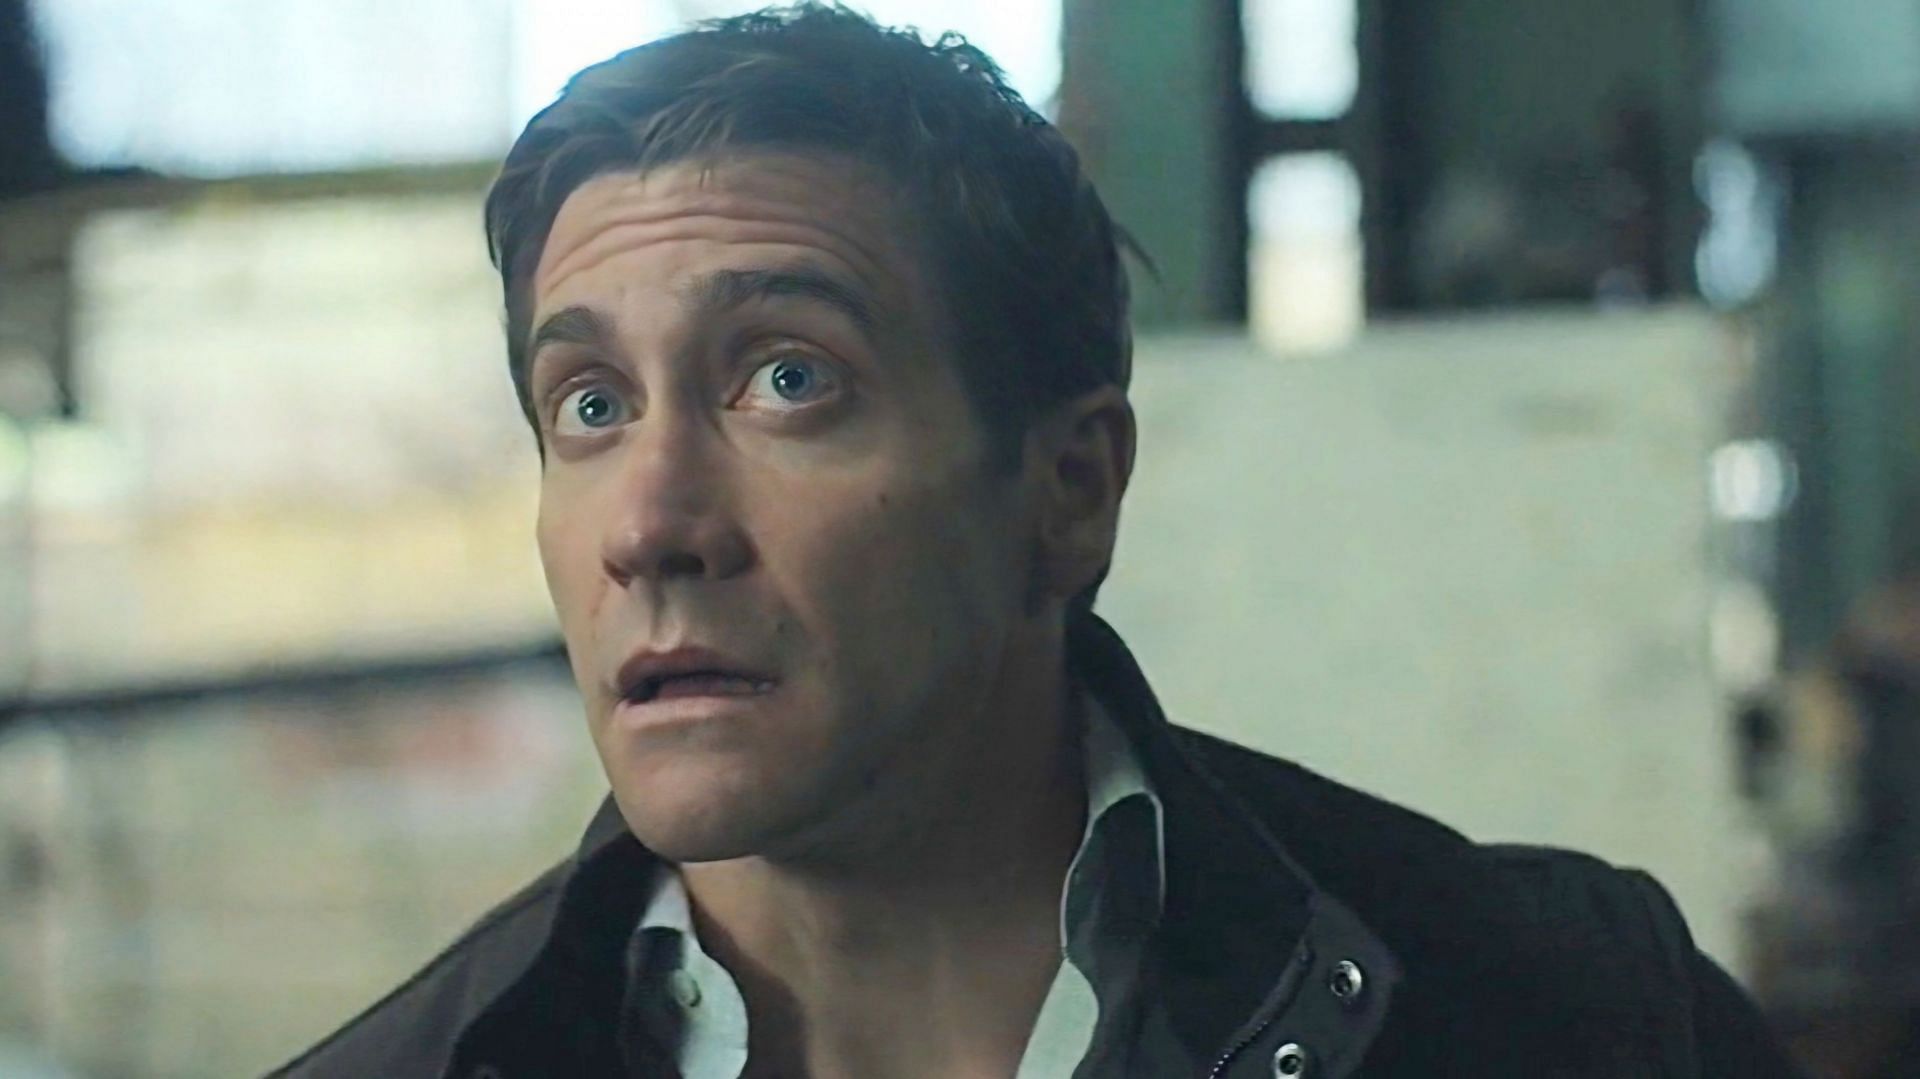 Jake Gyllenhaal as Rusty Sabich in Presumed Innocent episode 3 (Image via Apple TV+)